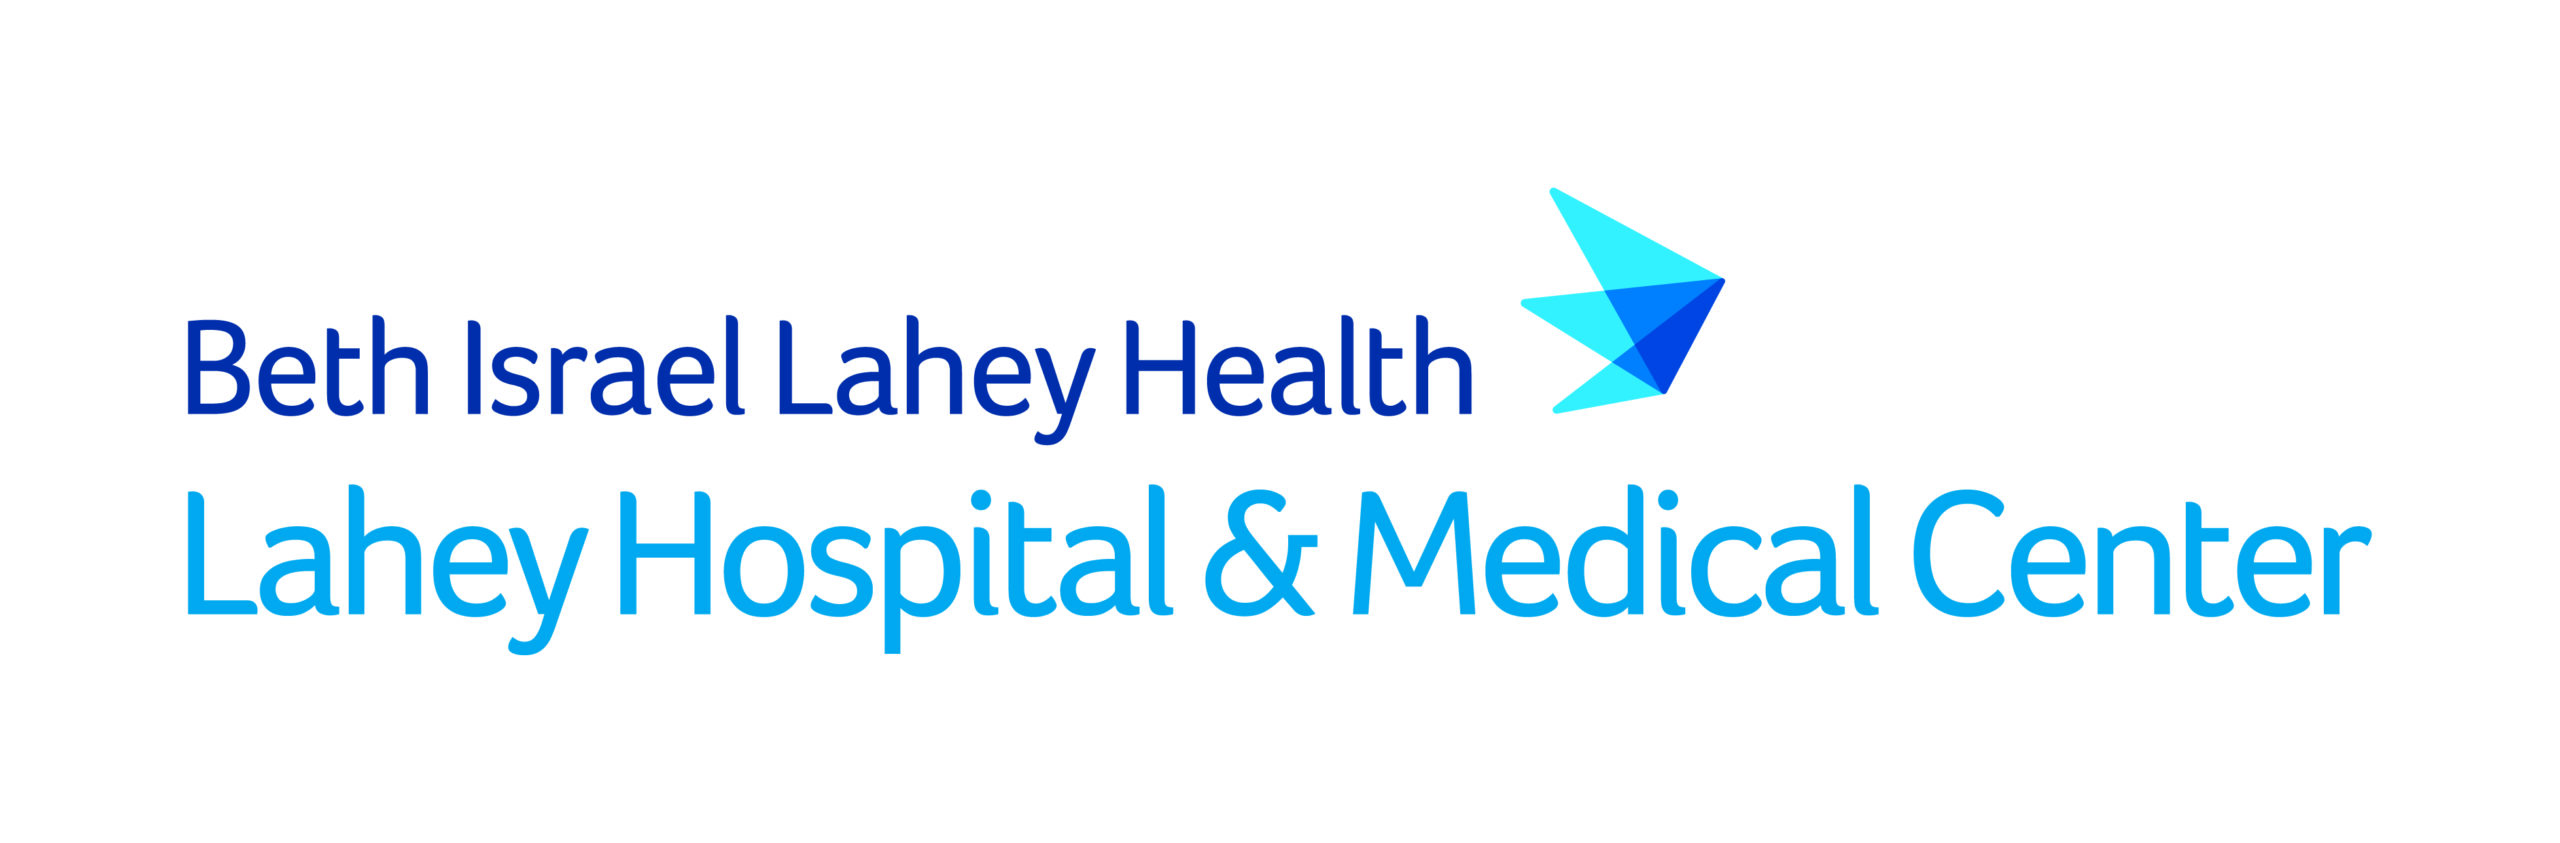 Beth Israel Lahey Health Logo